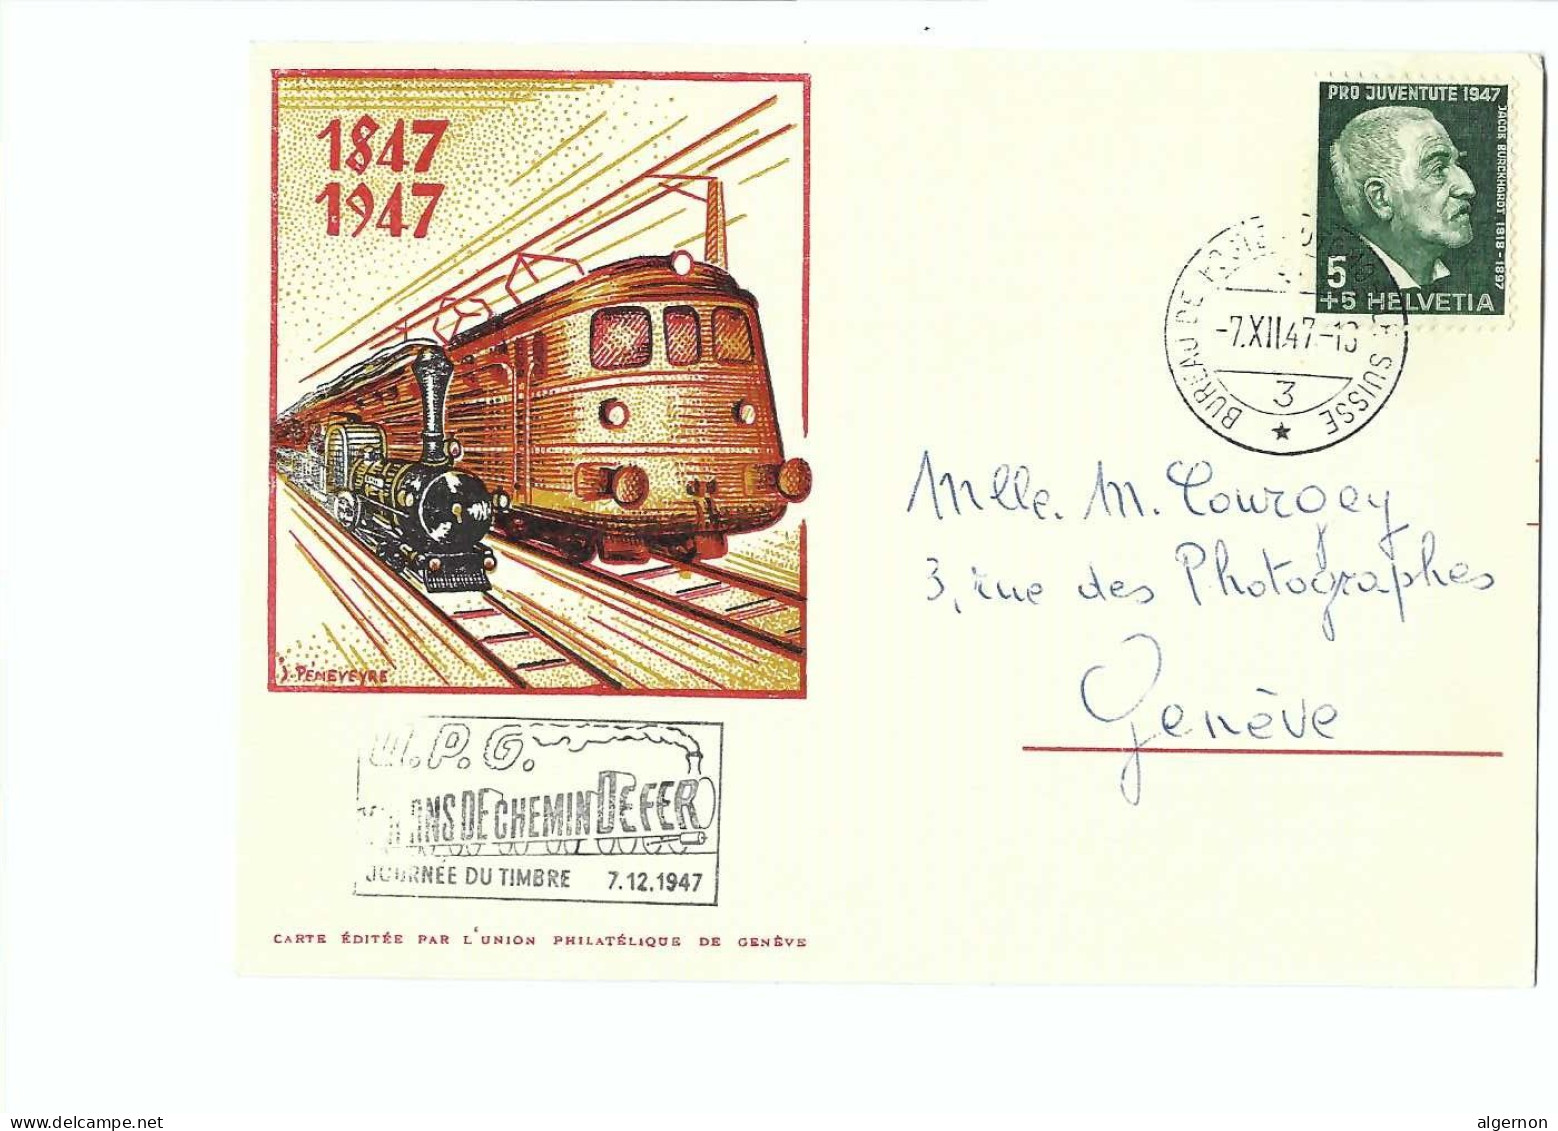 32592 -  Tag Der Briefmarke Journée Du Timbre 1947 Cent Ans De Chemin De Fer 1847-1947 Cachet Spécial UPG - Oblitérés